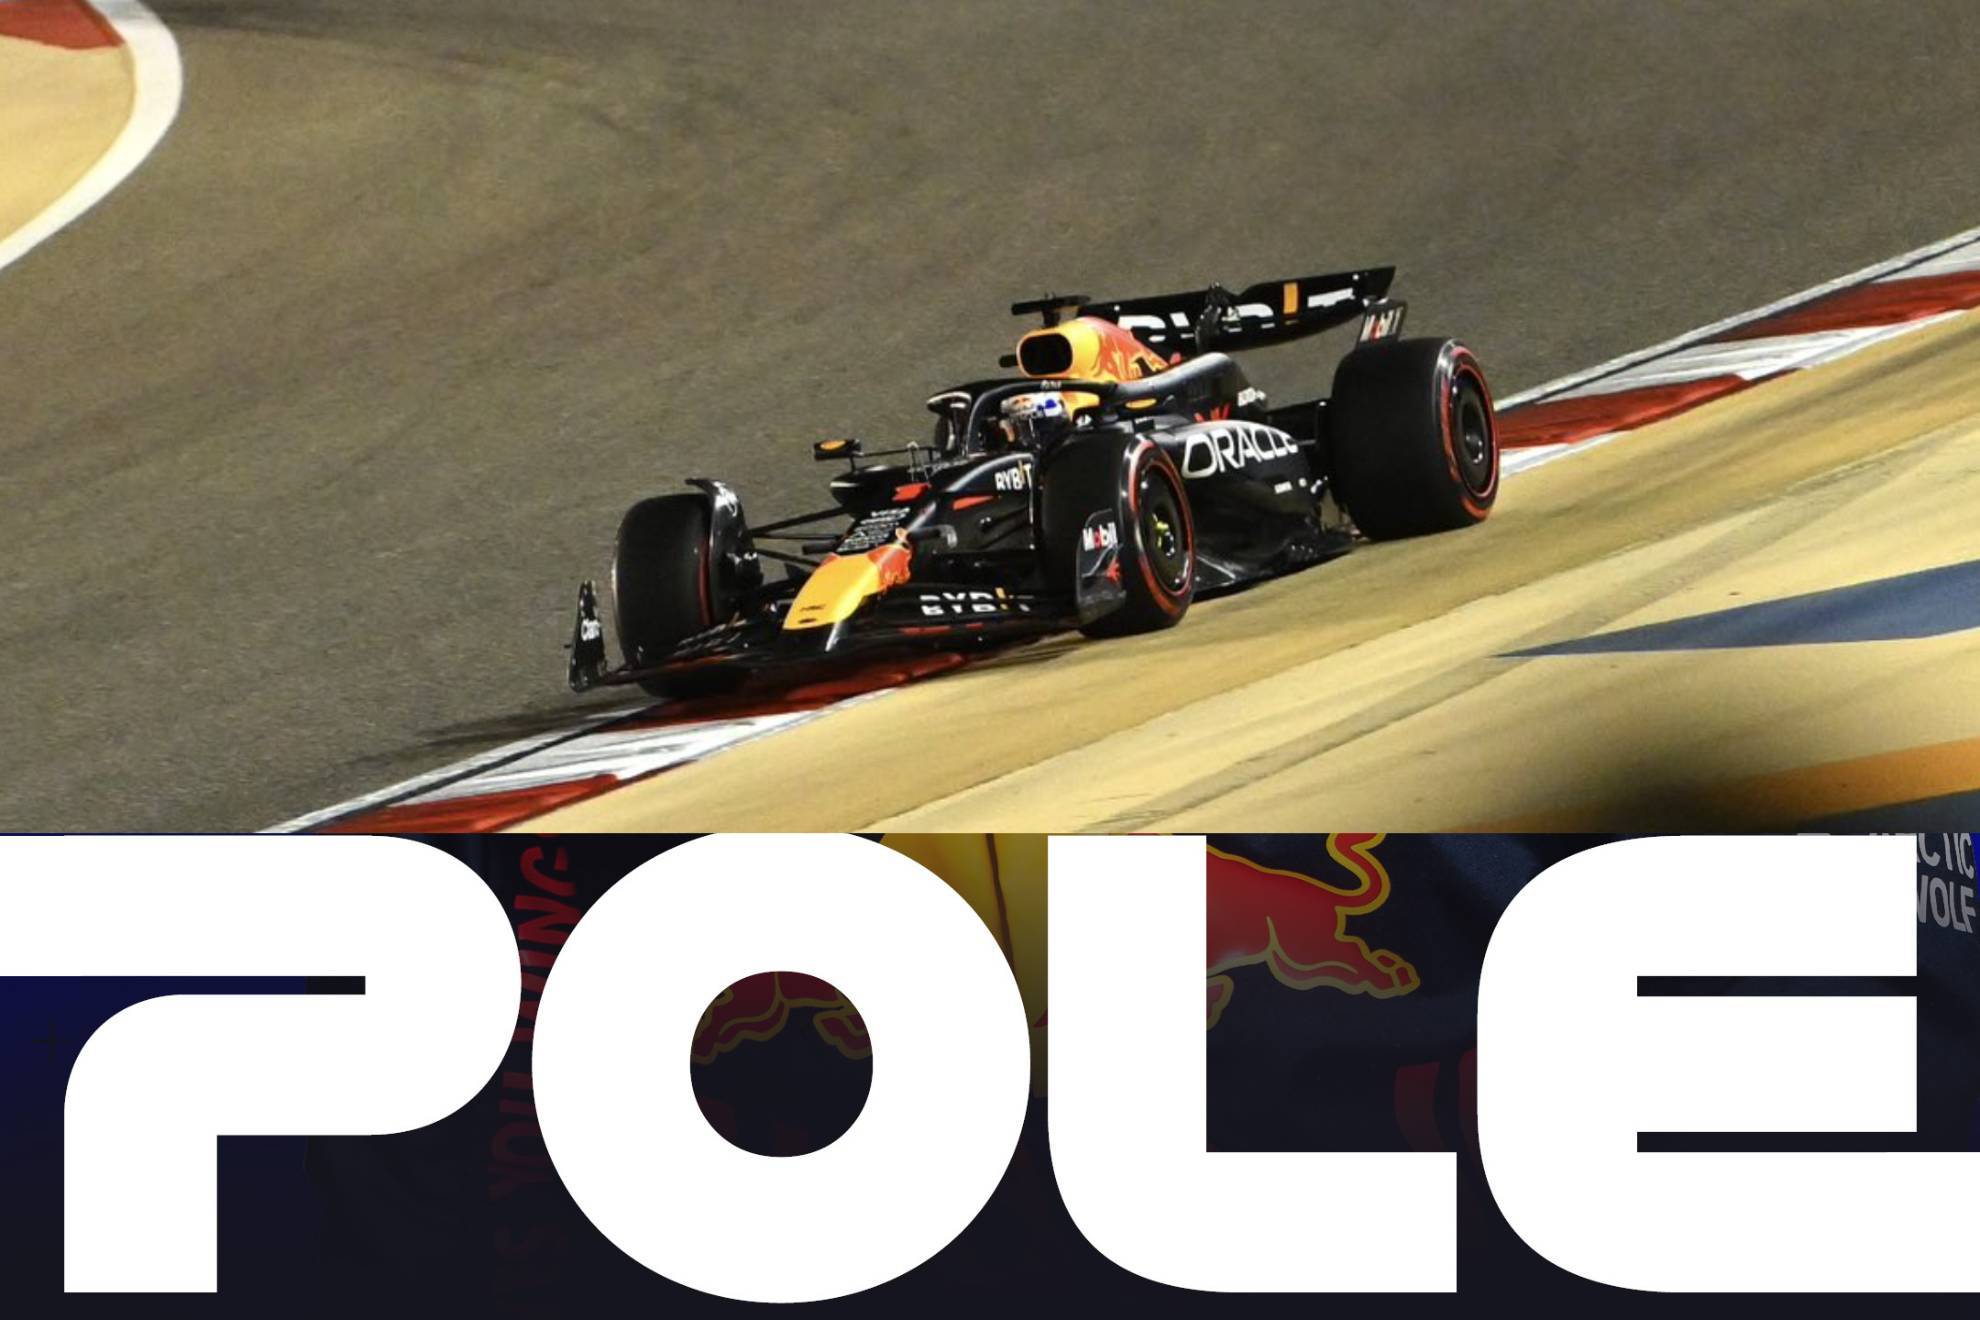 Clasificacin GP Bahrin F1: Resultados y posiciones, Verstappen Pole Position, Checo Prez en Top 5